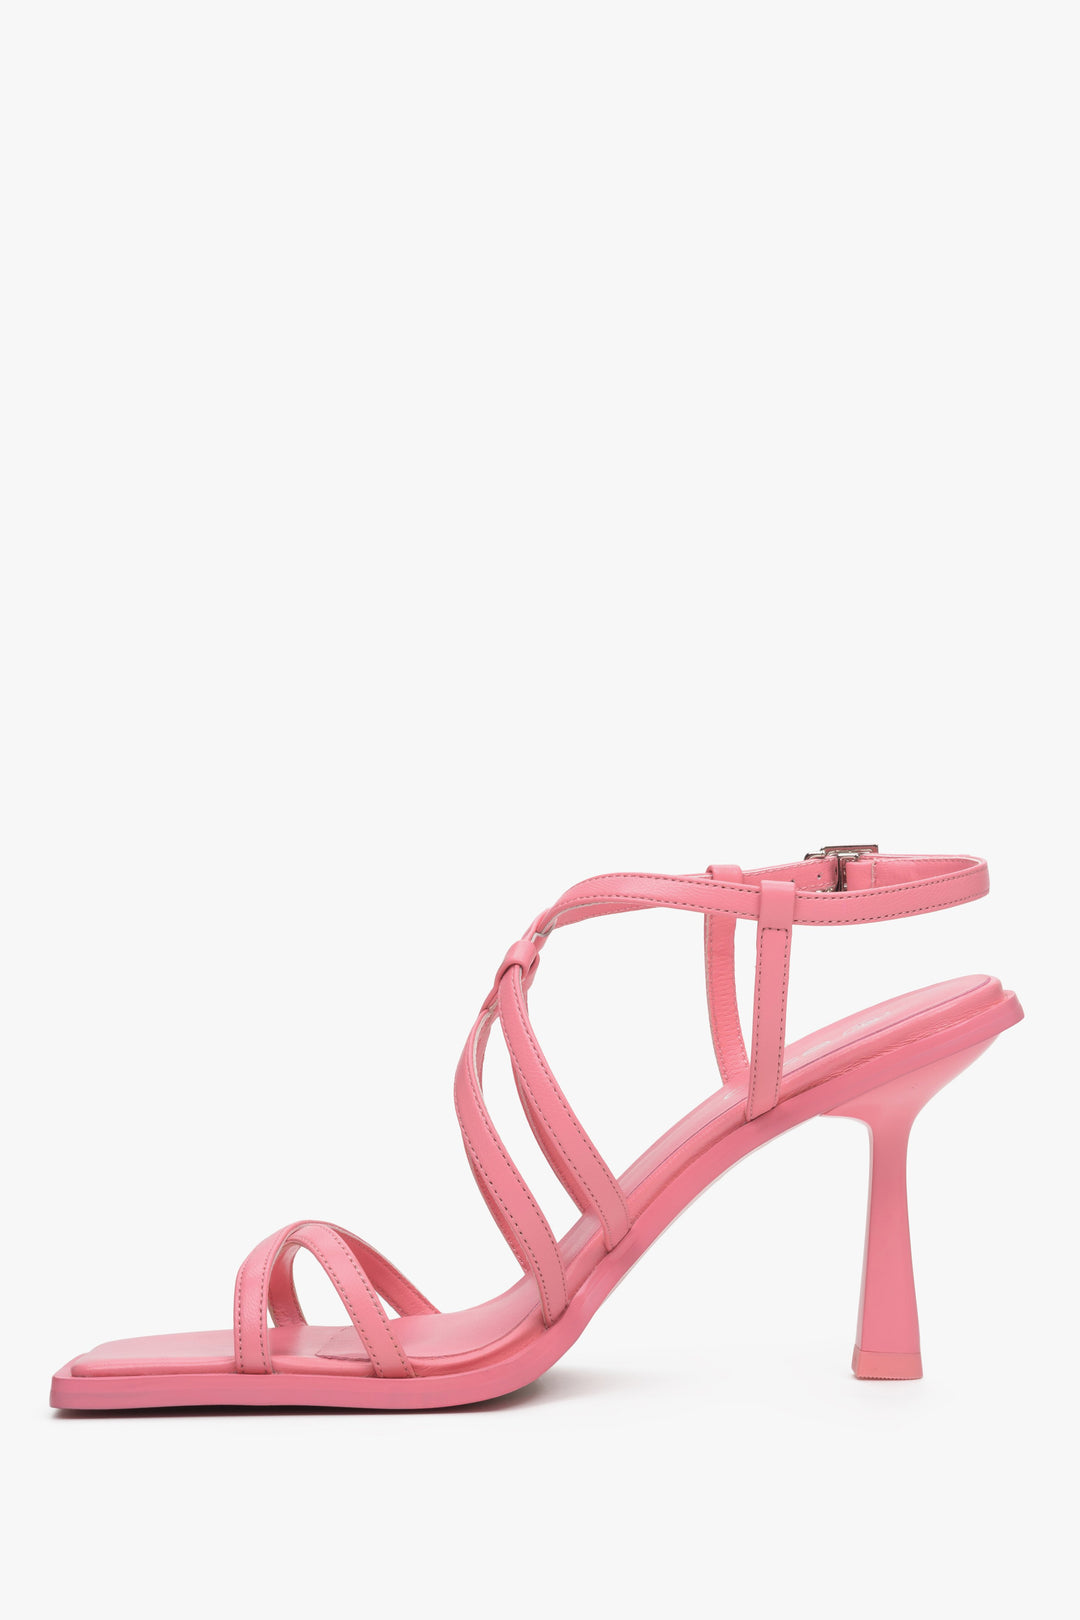 Damskie, skórzane sandały damskie na wysokim obcasie Estro w kolorze różowym - profil butów.